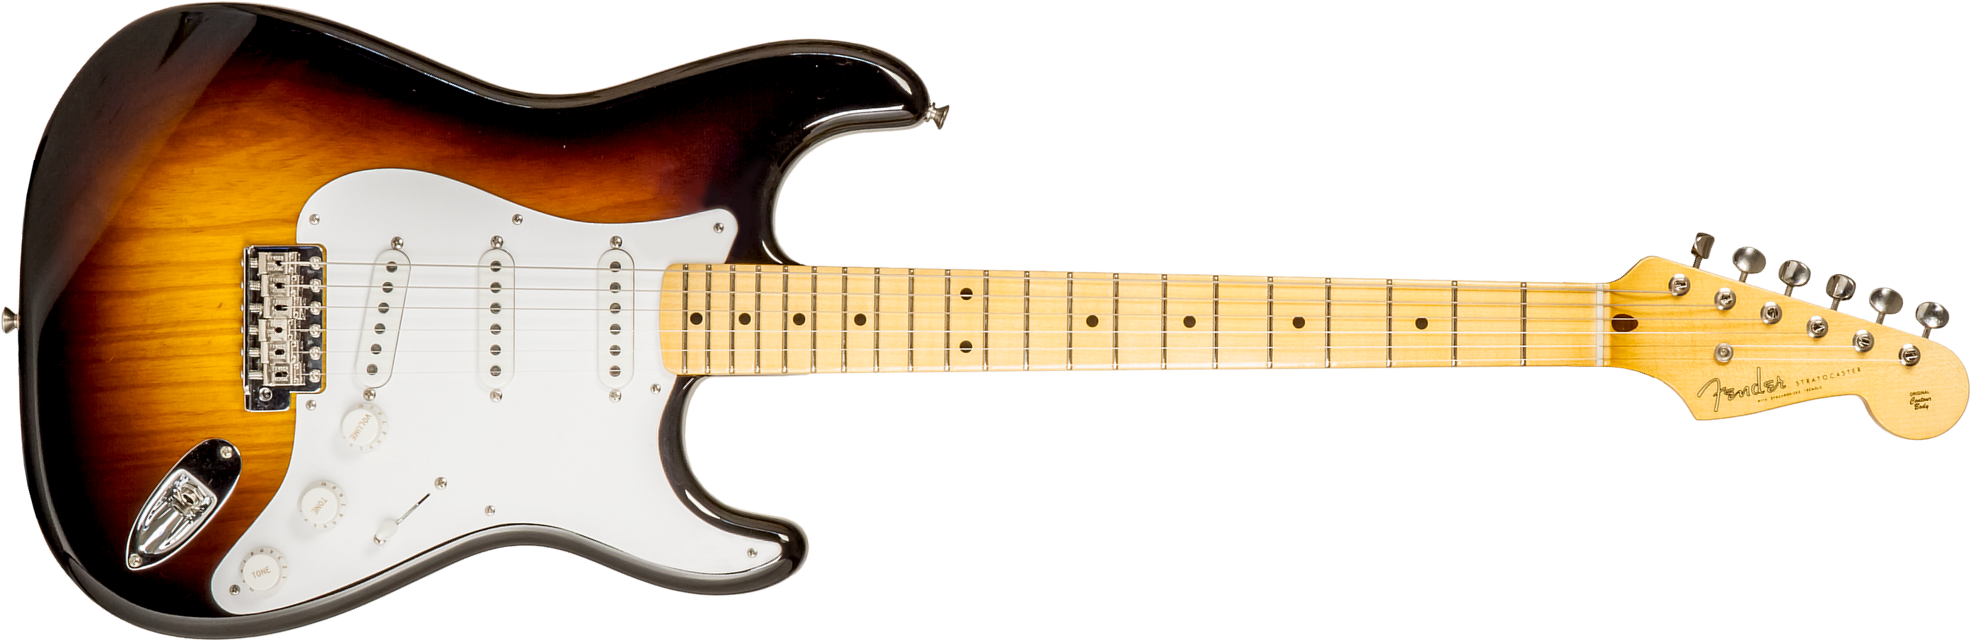 Fender Custom Shop Strat 1954 70th Anniv. #xn4597 3s Trem Mn - Time Capsule 2-color Sunburst - Guitarra eléctrica con forma de str. - Main picture